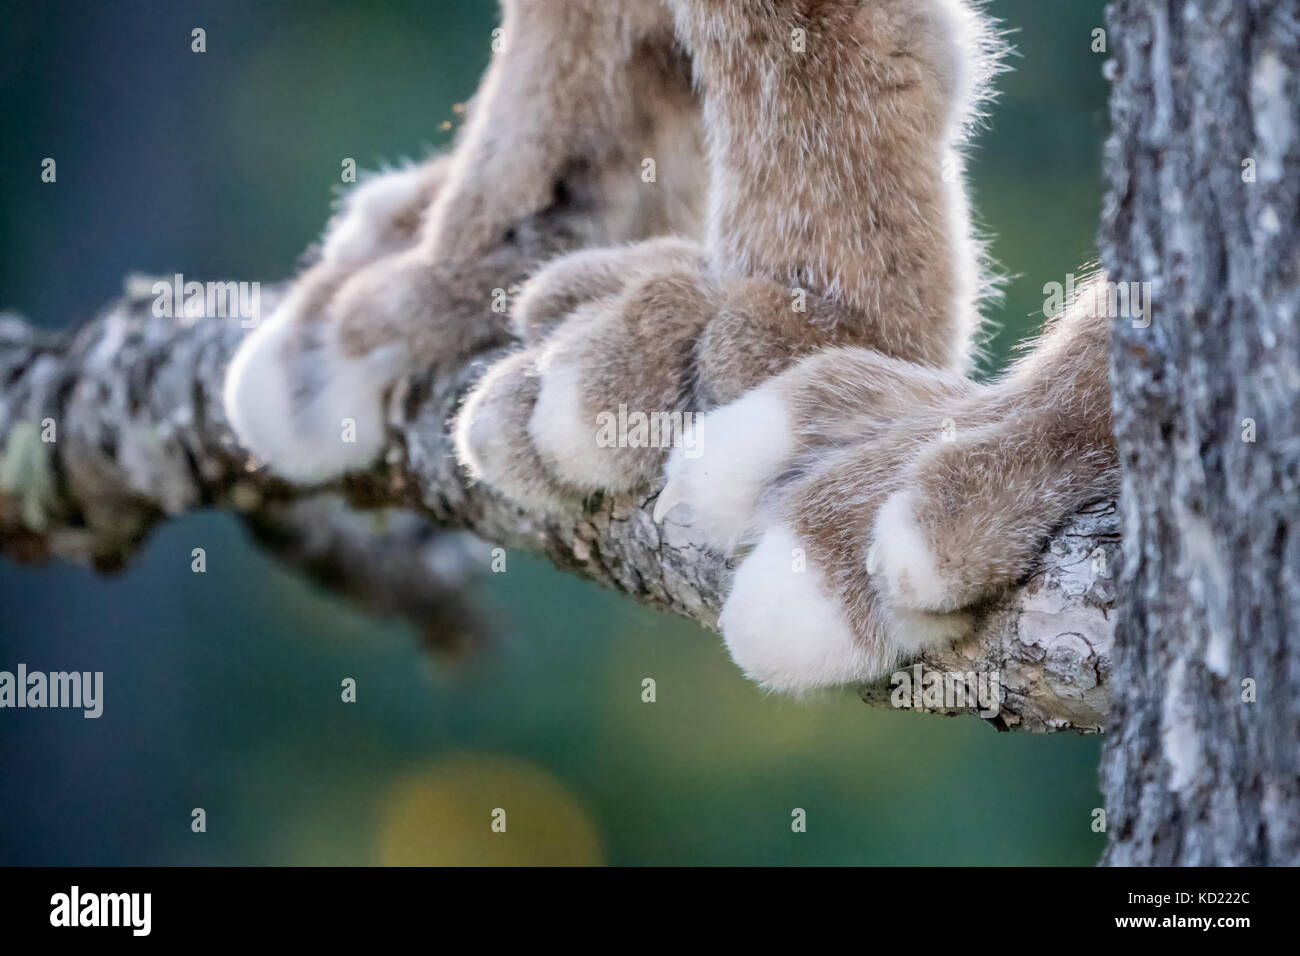 Close-up of les pattes d'un Lynx du Canada dans un arbre à Bozeman, Montana, USA. Elles sont équipées d'une épaisse fourrure et exceptionnellement grandes pattes. Le r Banque D'Images